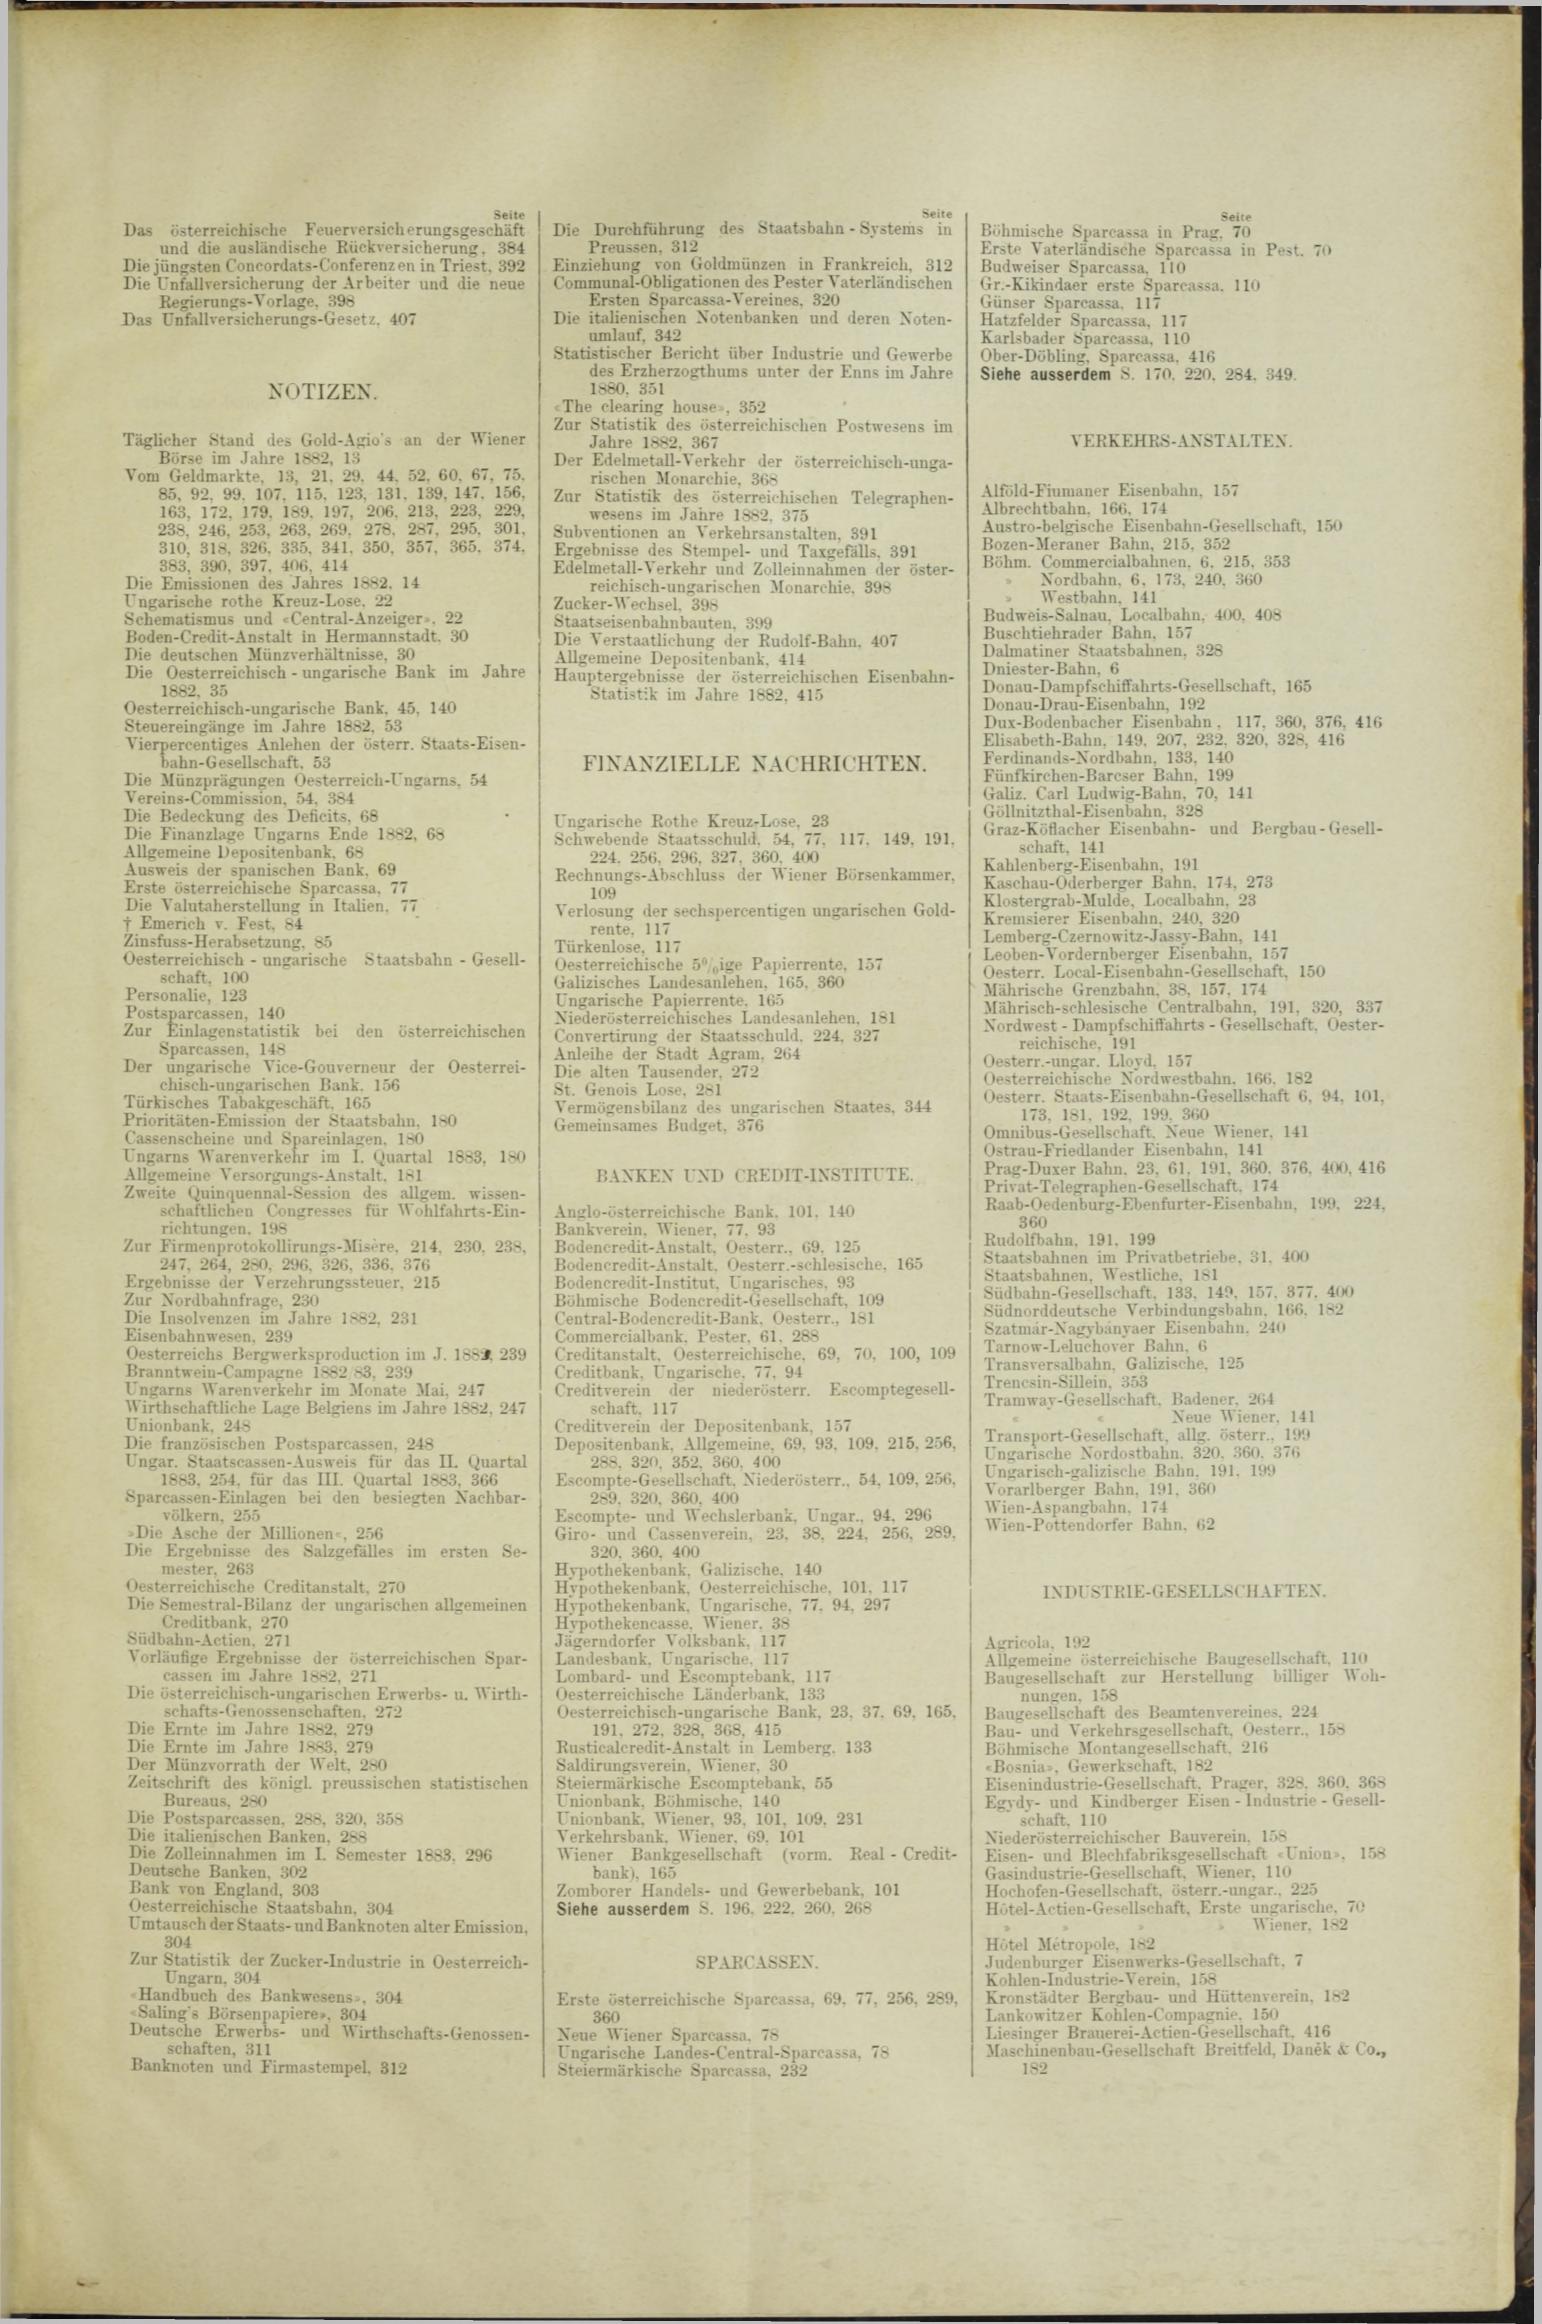 Der Tresor 28.06.1883 - Seite 11